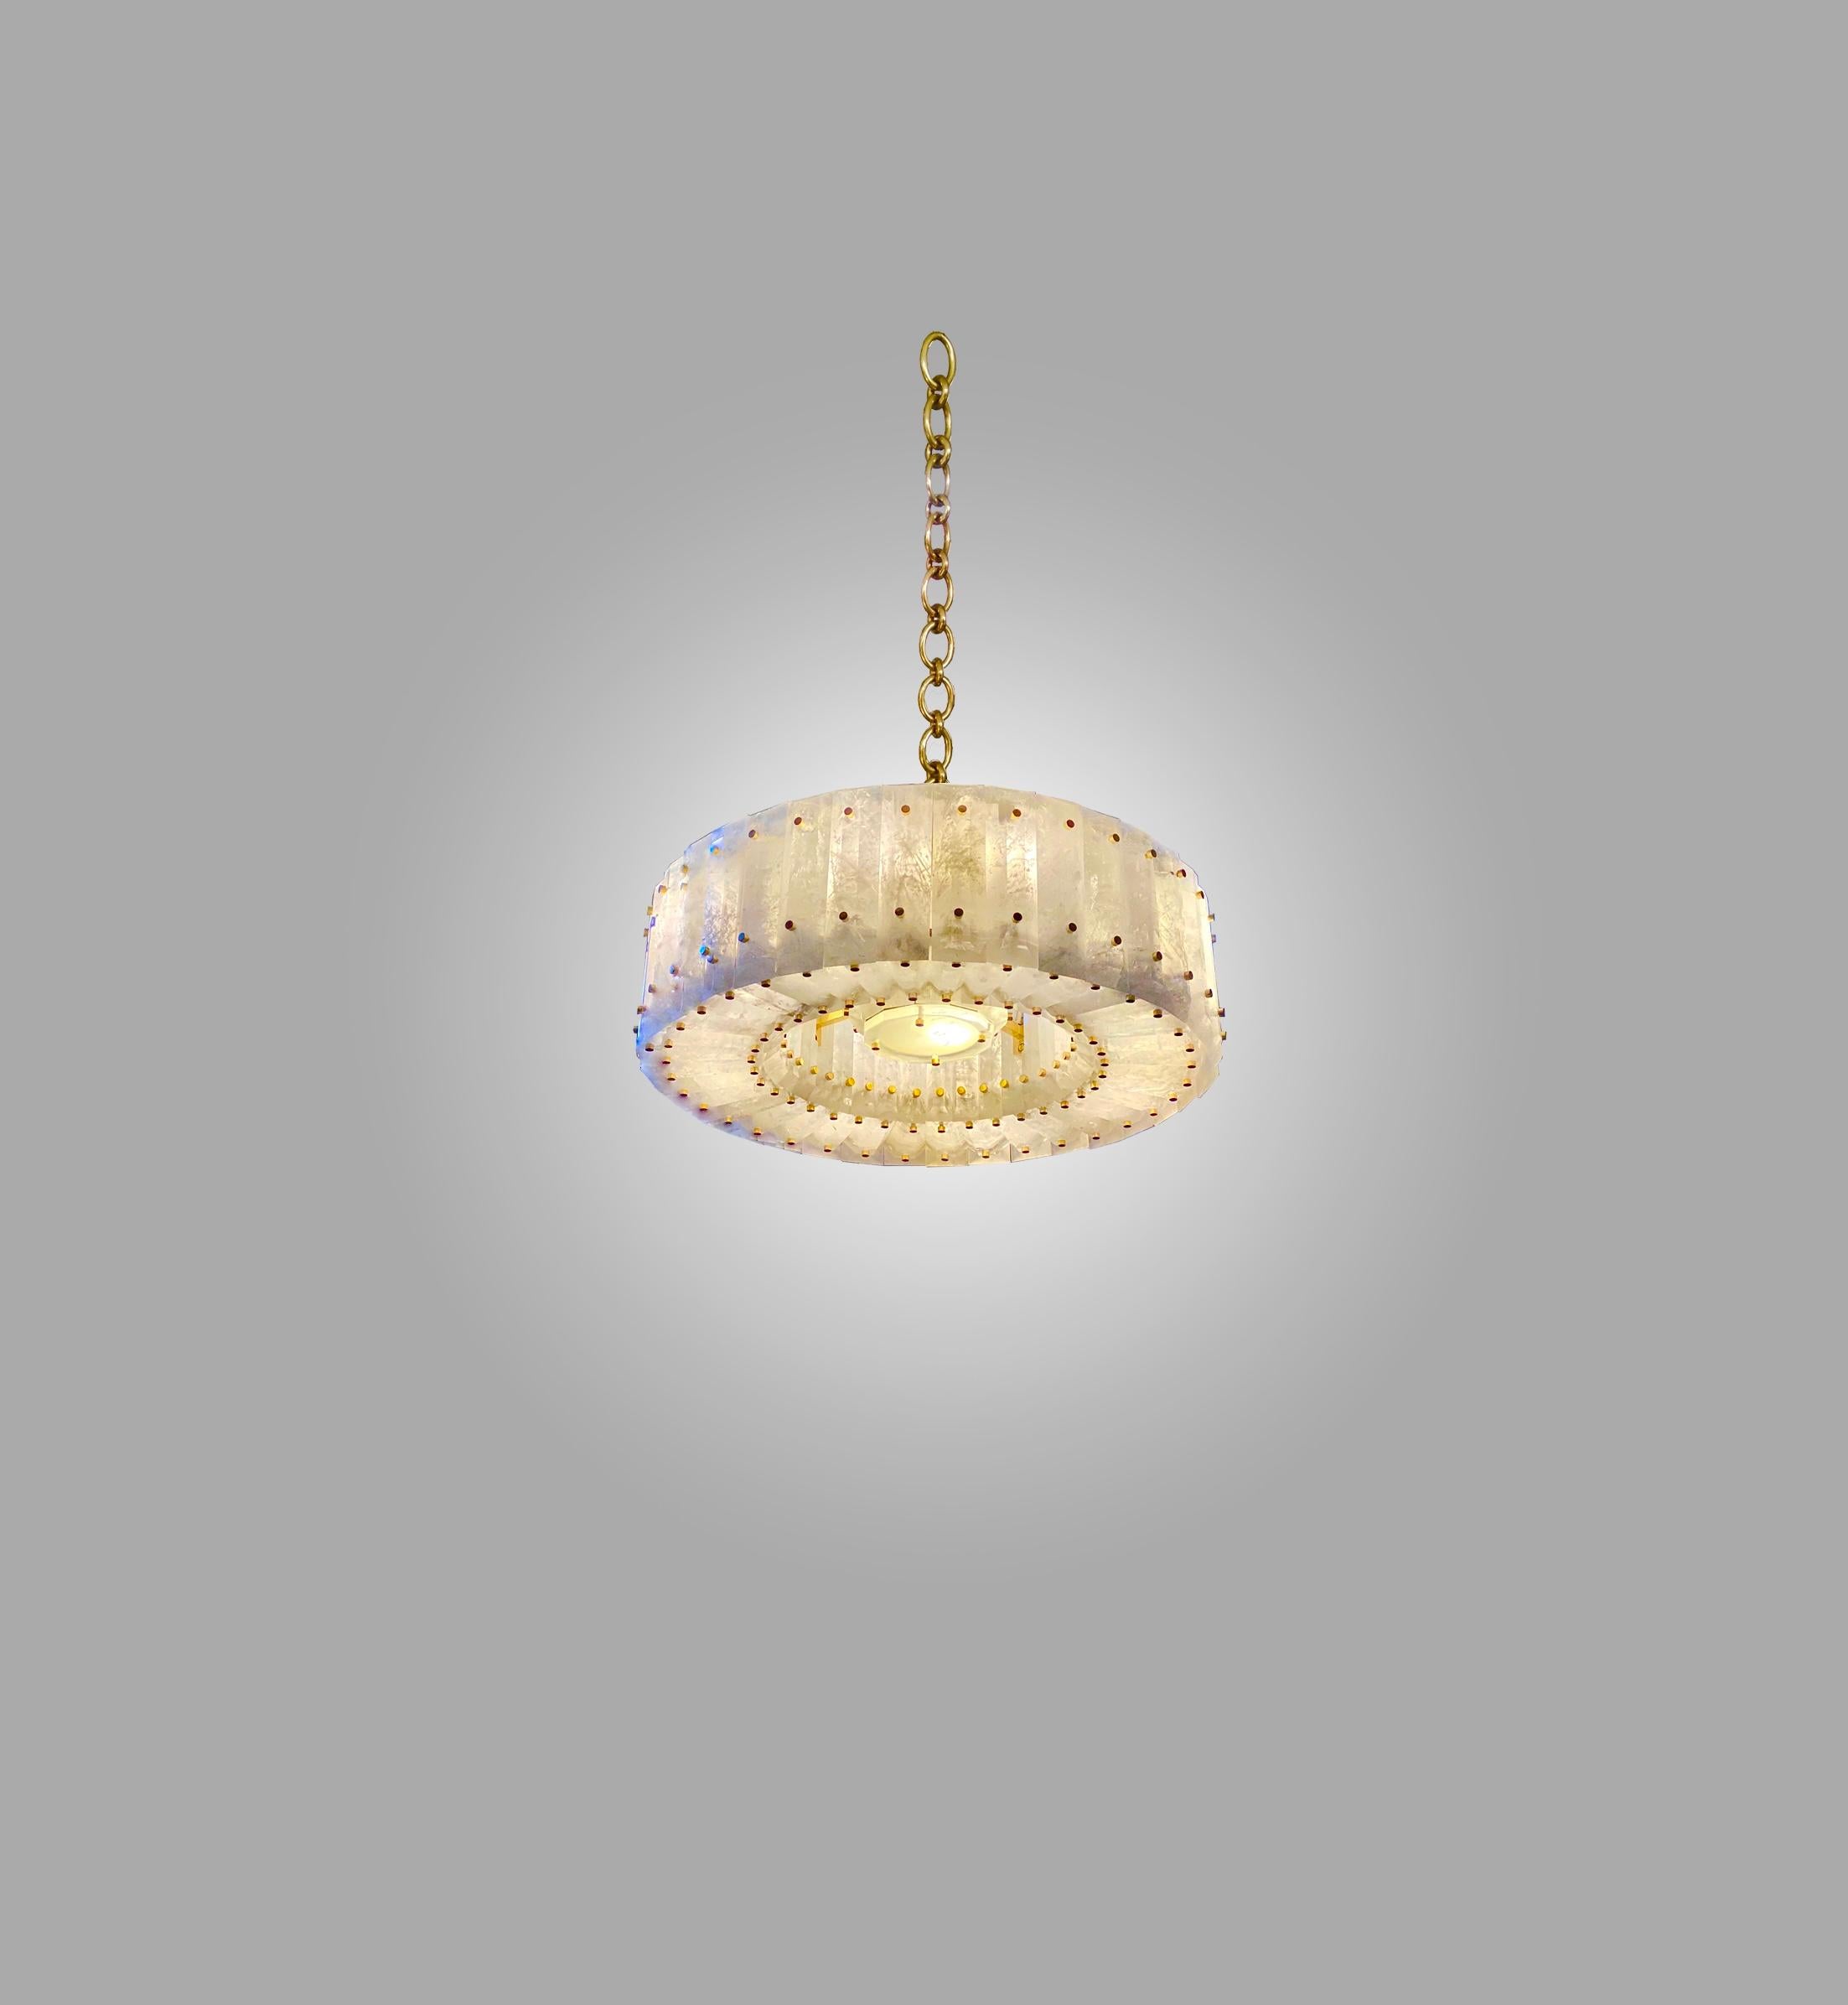 crystal chandelier lights